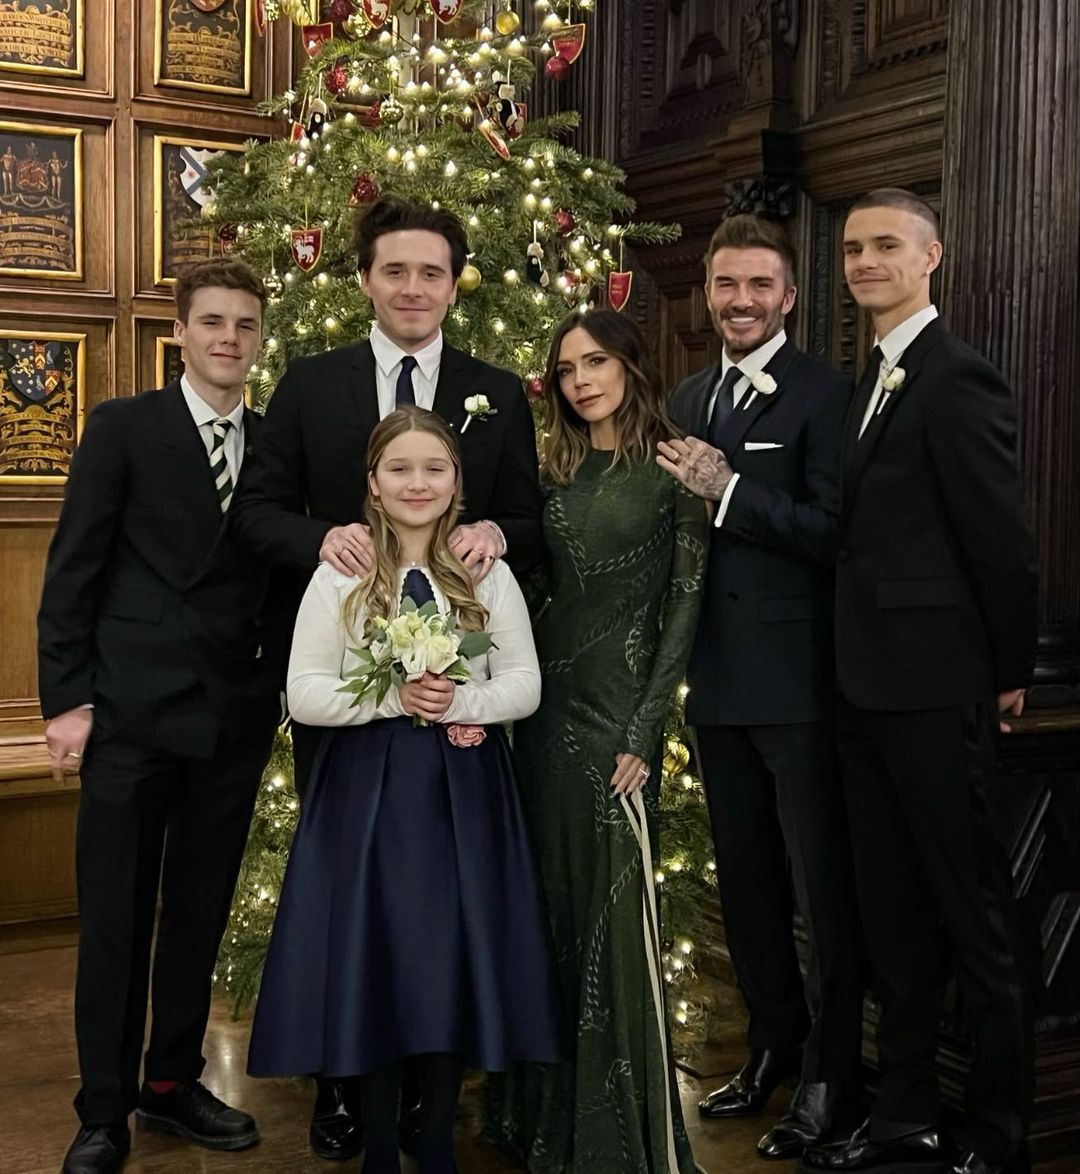 'Cực phẩm' ngày Giáng sinh đích thị là bức ảnh đẹp không tì vết của đại gia đình David Beckham  - Ảnh 1